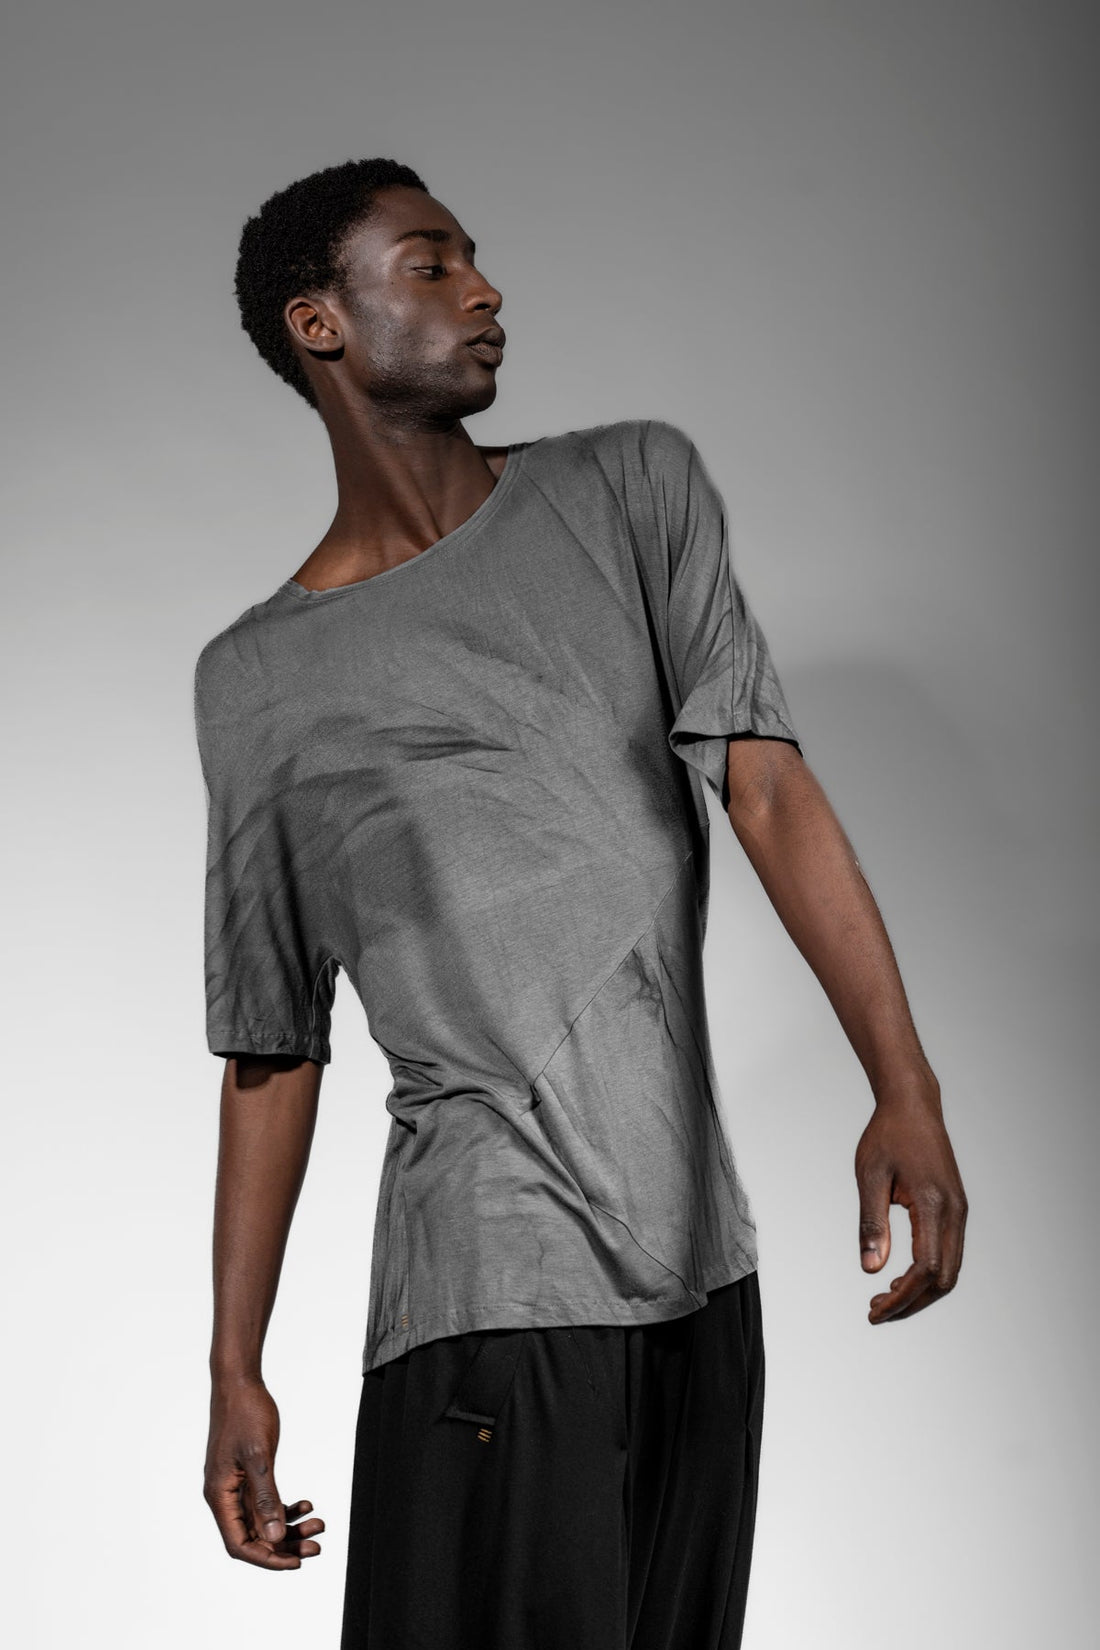 eigensinnig wien | Thaler | Unkonventionelles Designer Bambus T-Shirt in Grau